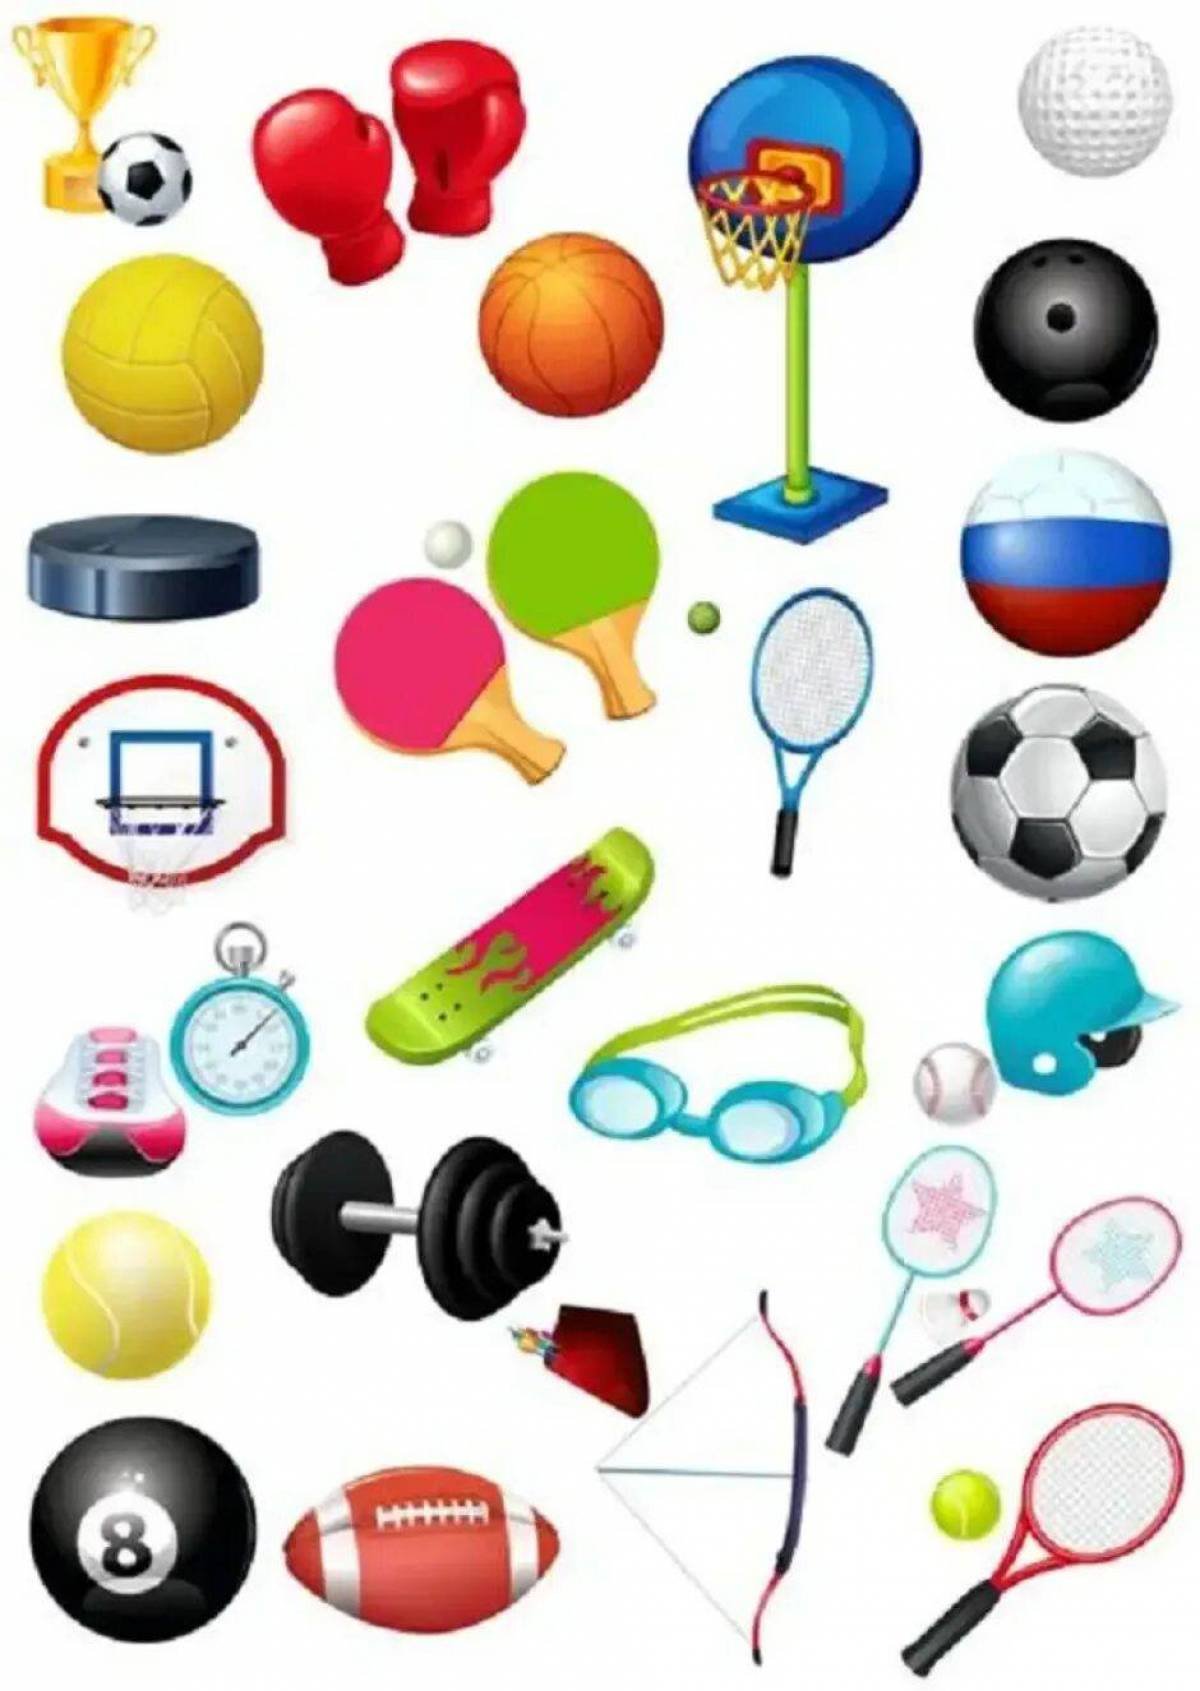 Sports items. Спортивный инвентарь. Спортивный инвентарь для детей. Спортивные атрибуты. Инвентарь для спортивных игр.